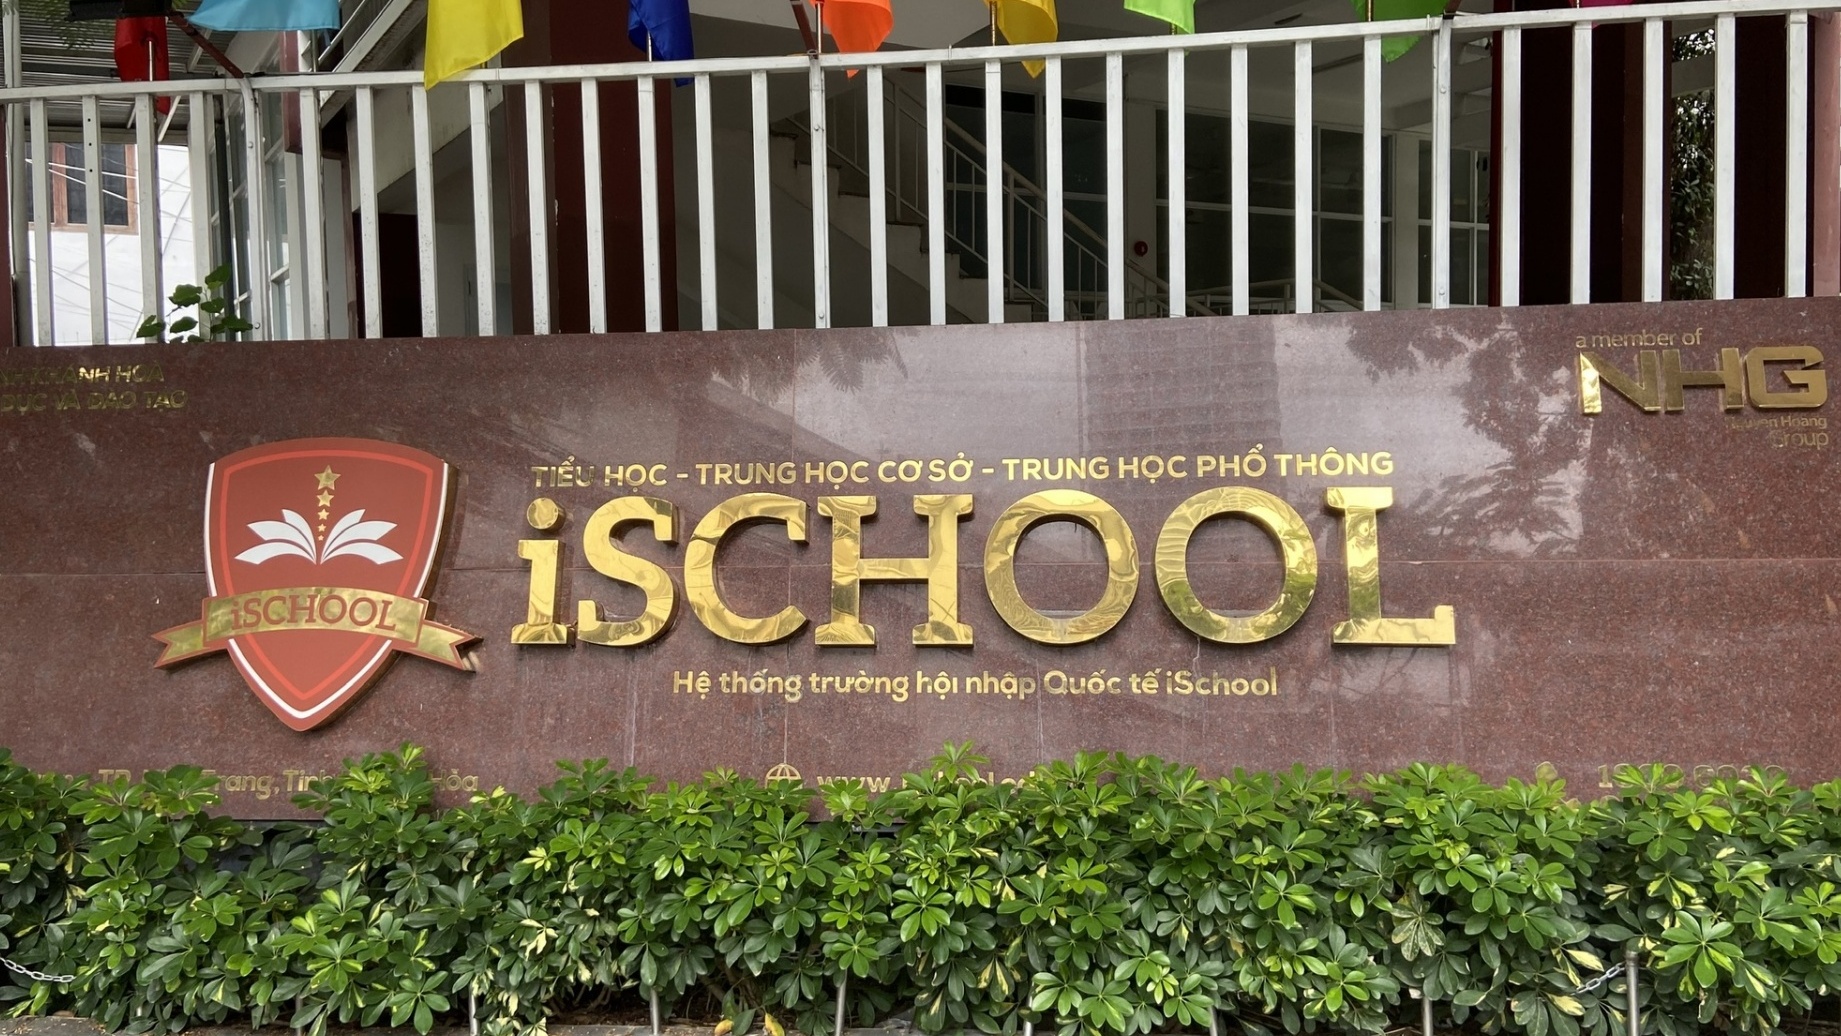 Vụ ngộ độc tại Trường iSchool Nha Trang: Khởi tố vụ án vi phạm về an toàn thực phẩm